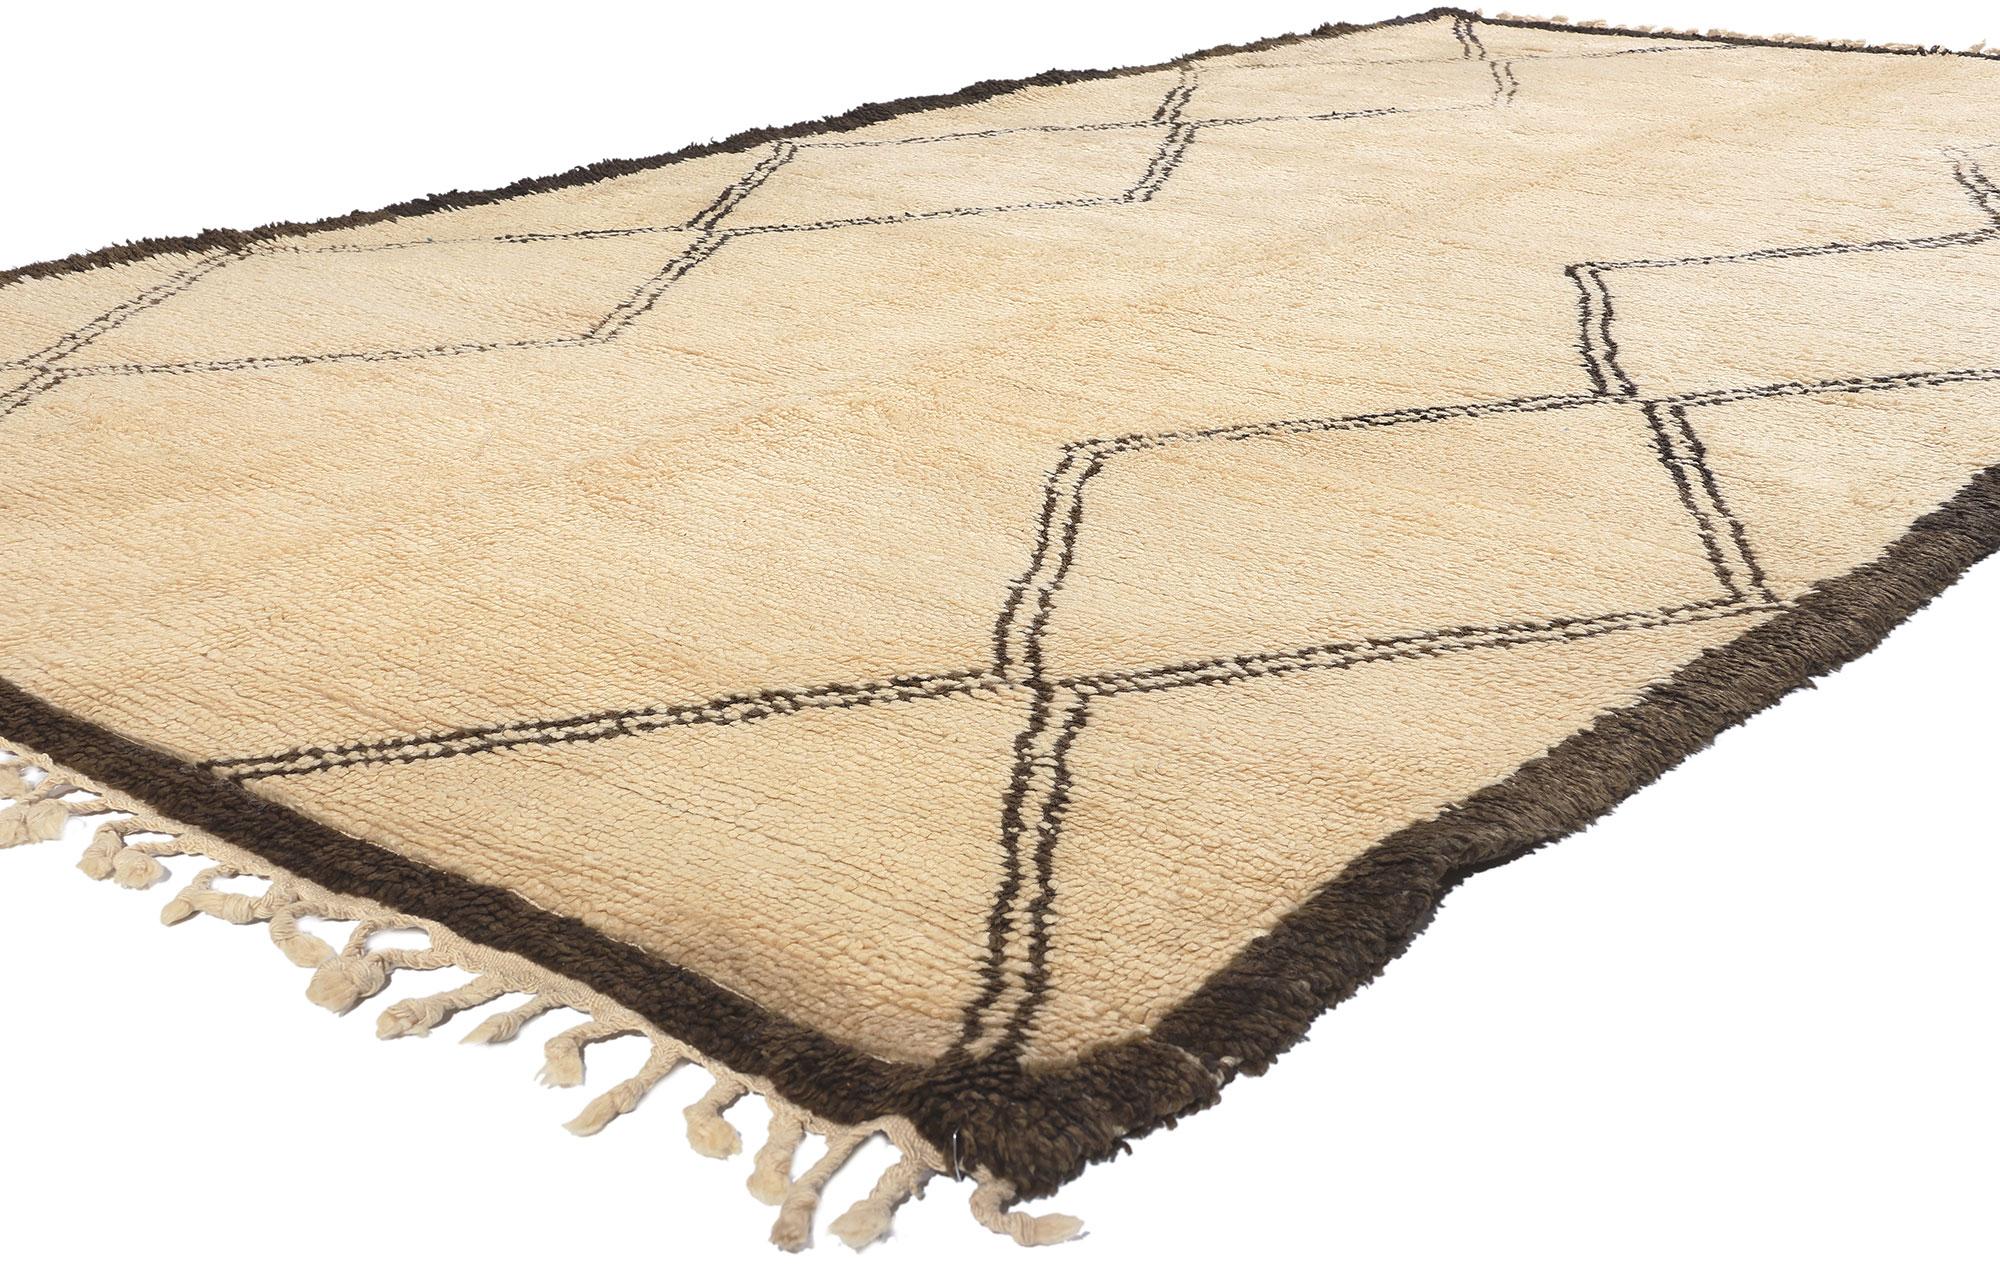 20768 Marokkanischer Vintage-Teppich Beni Ourain, 06'04 x 11'01. Mit diesem handgeknüpften marokkanischen Beni Ourain-Teppich aus Wolle tauchen Sie ein in die Welt des Midcentury Modern. Auf dem cremefarbenen Feld entfalten sich zwei Säulen aus